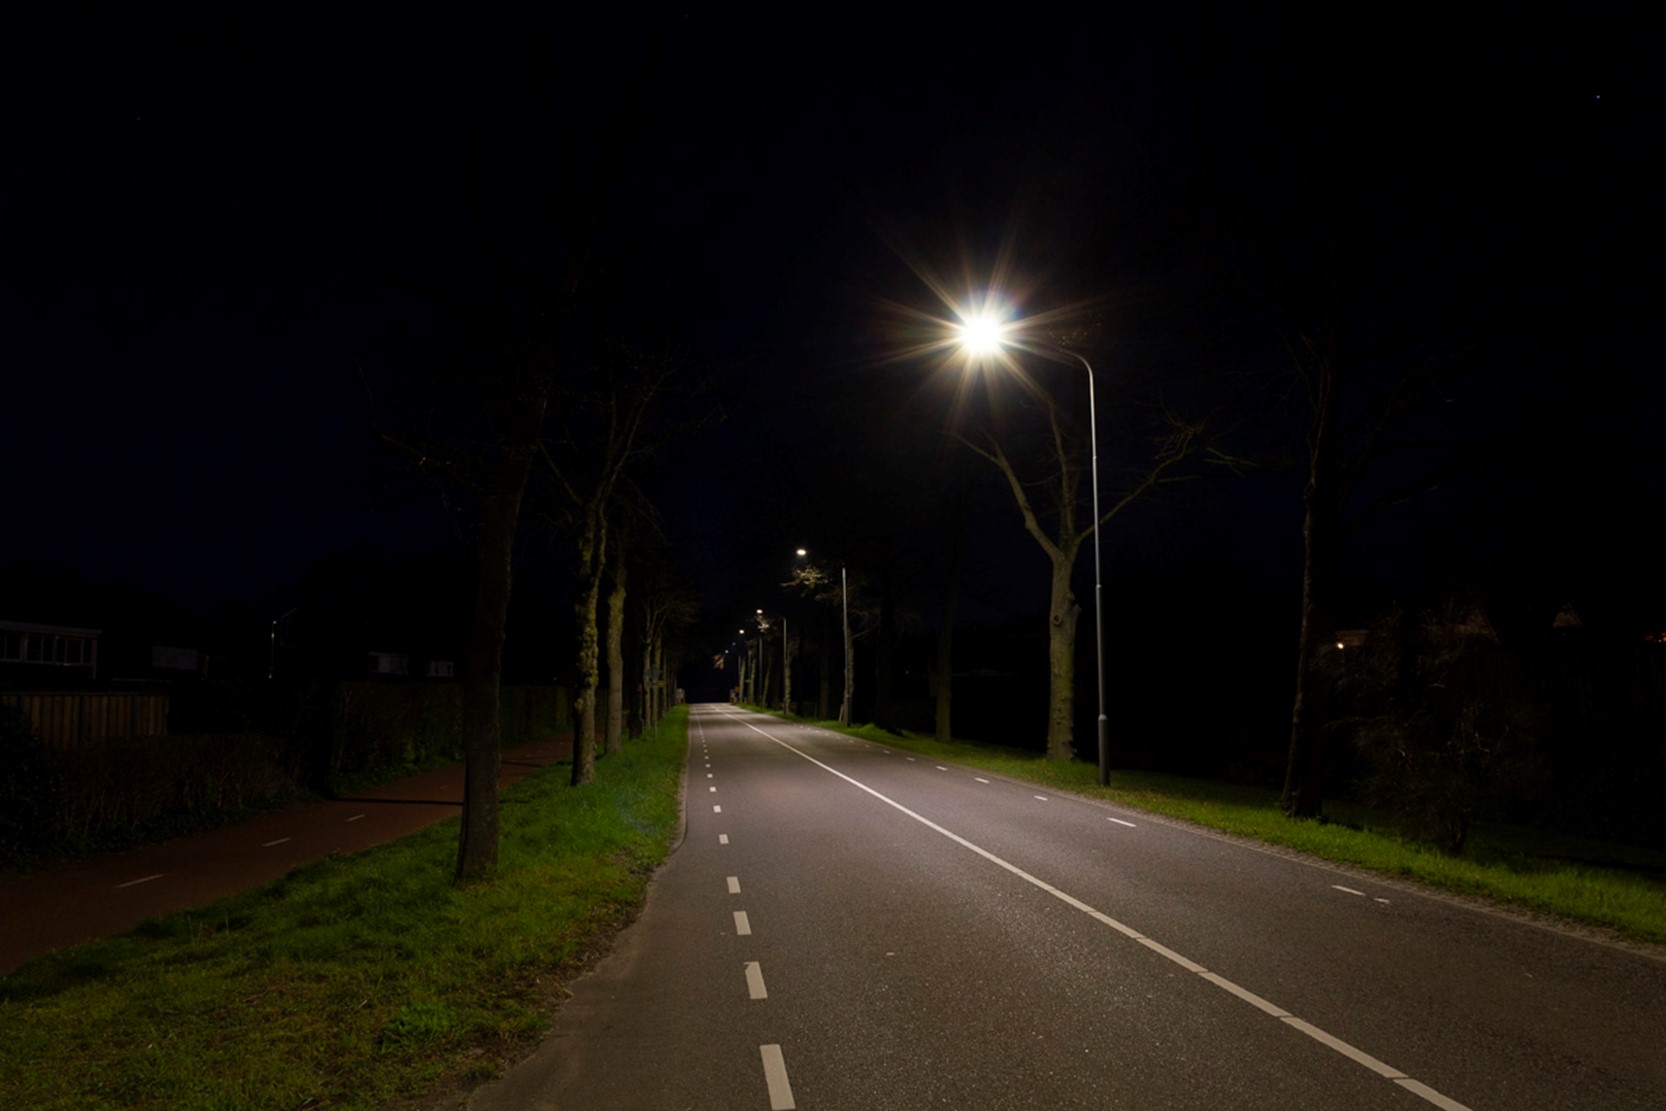 Straat met bomen erlangs in het donker. Langs de straat staan lantaarnpalen die de weg verlichten.